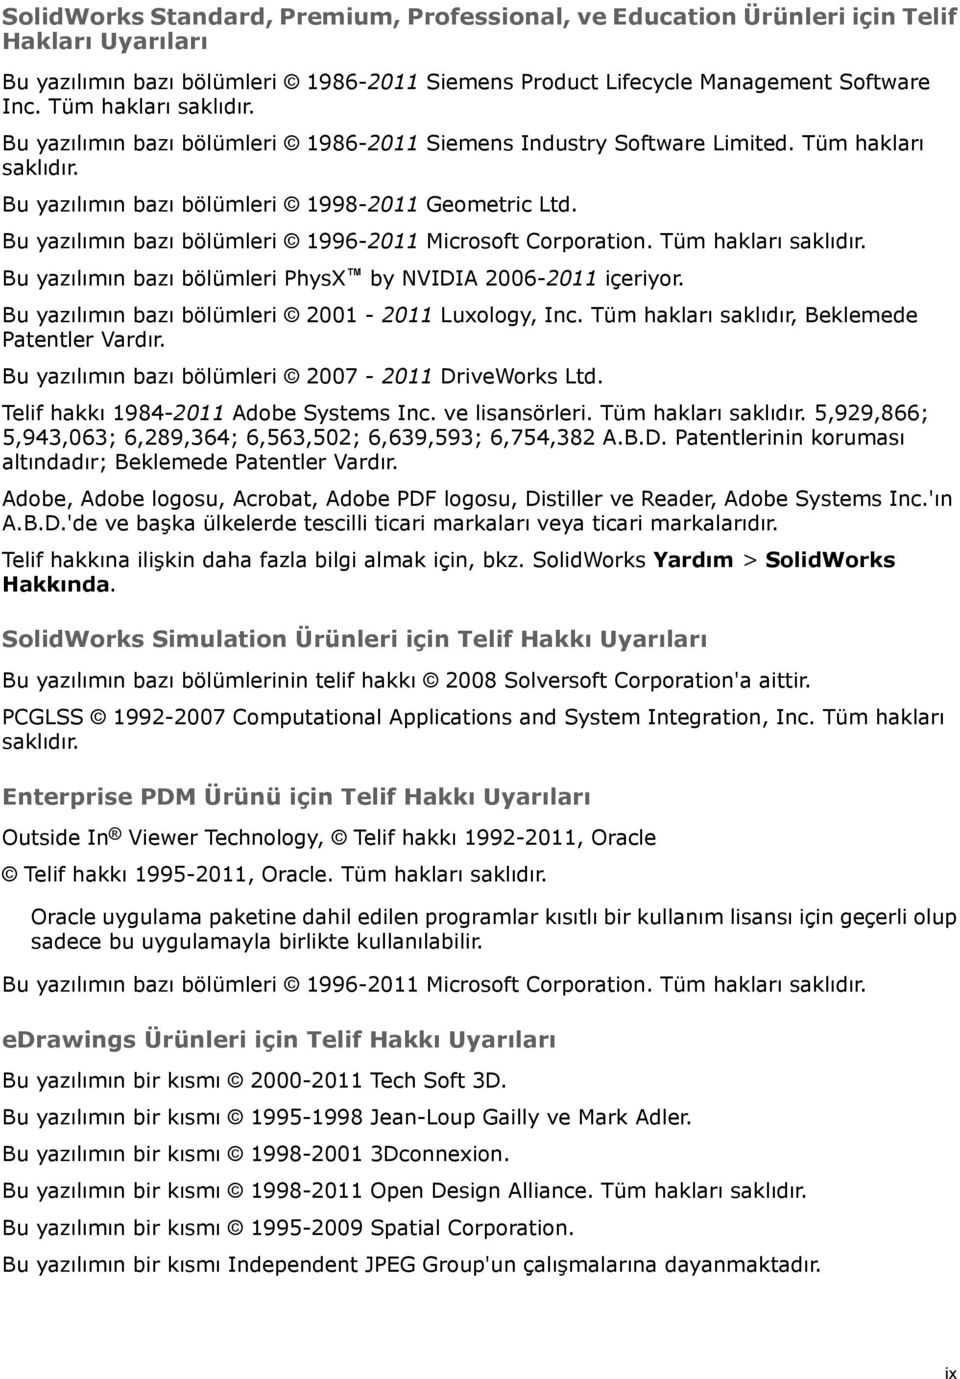 Bu yazılımın bazı bölümleri 1996-2011 Microsoft Corporation. Tüm hakları saklıdır. Bu yazılımın bazı bölümleri PhysX by NVIDIA 2006-2011 içeriyor. Bu yazılımın bazı bölümleri 2001-2011 Luxology, Inc.